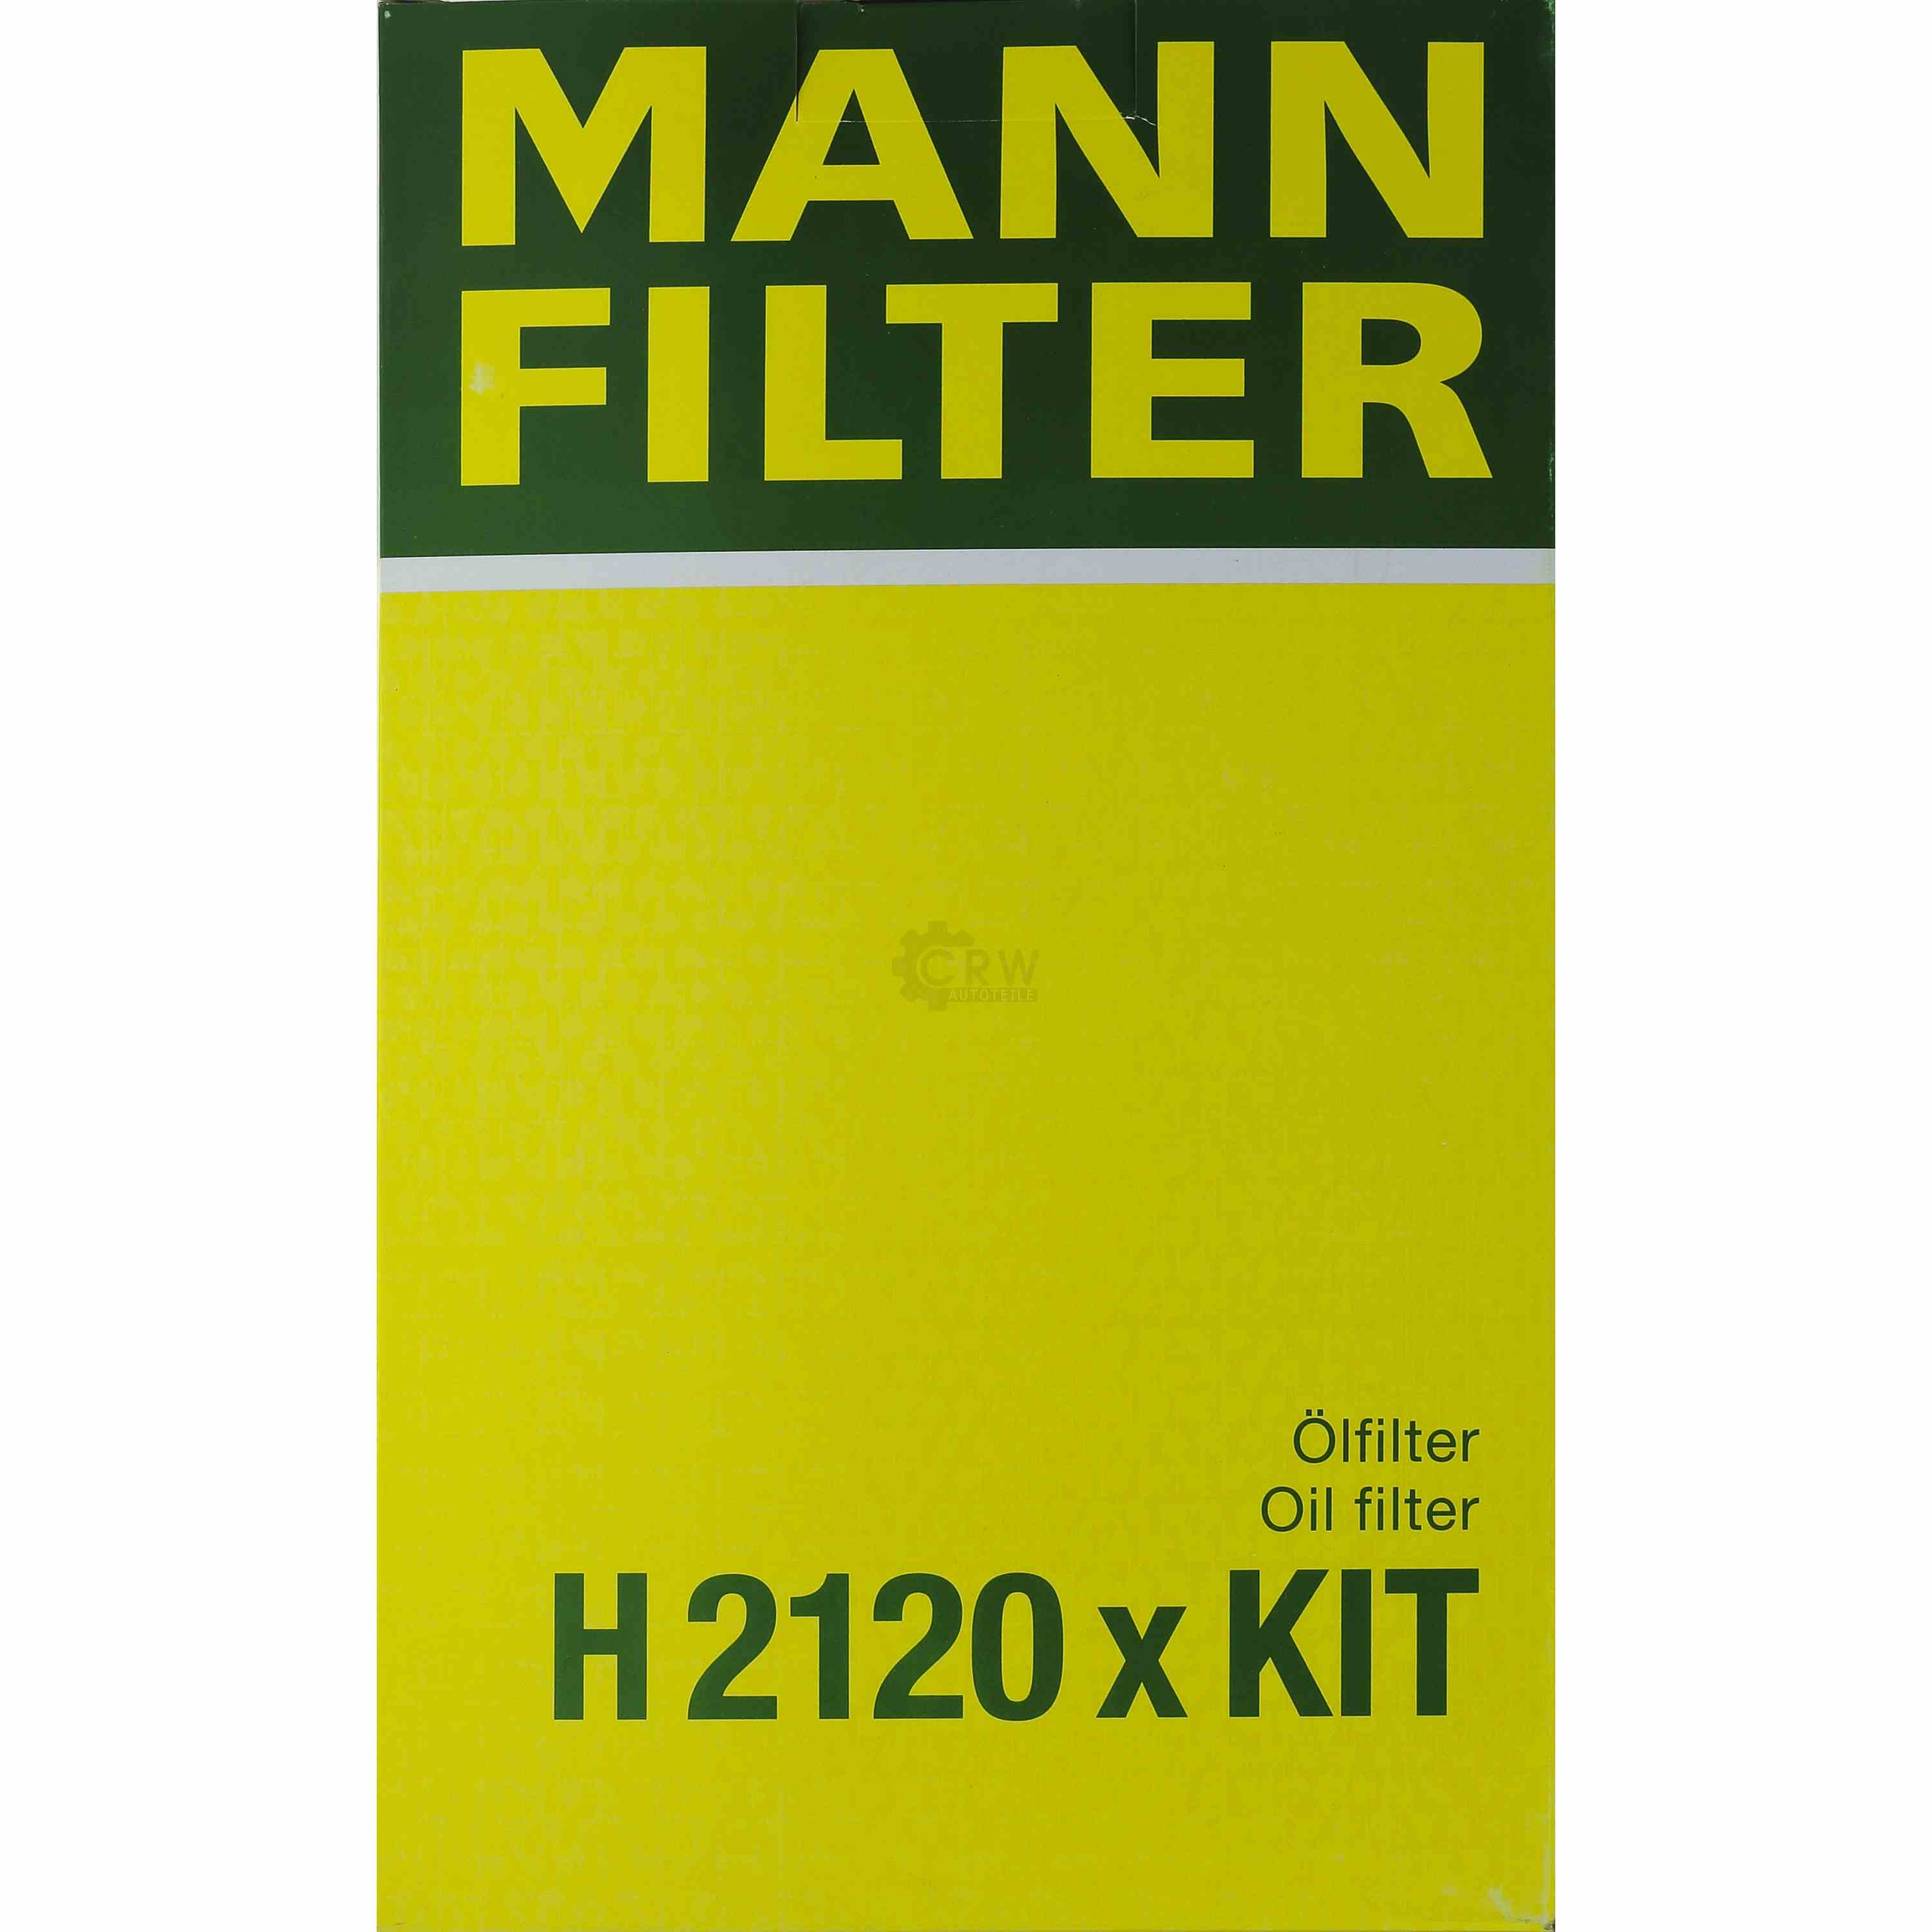 MANN-FILTER Getriebeölfilter für Automatikgetriebe H 2120 x KIT VW Gruppe